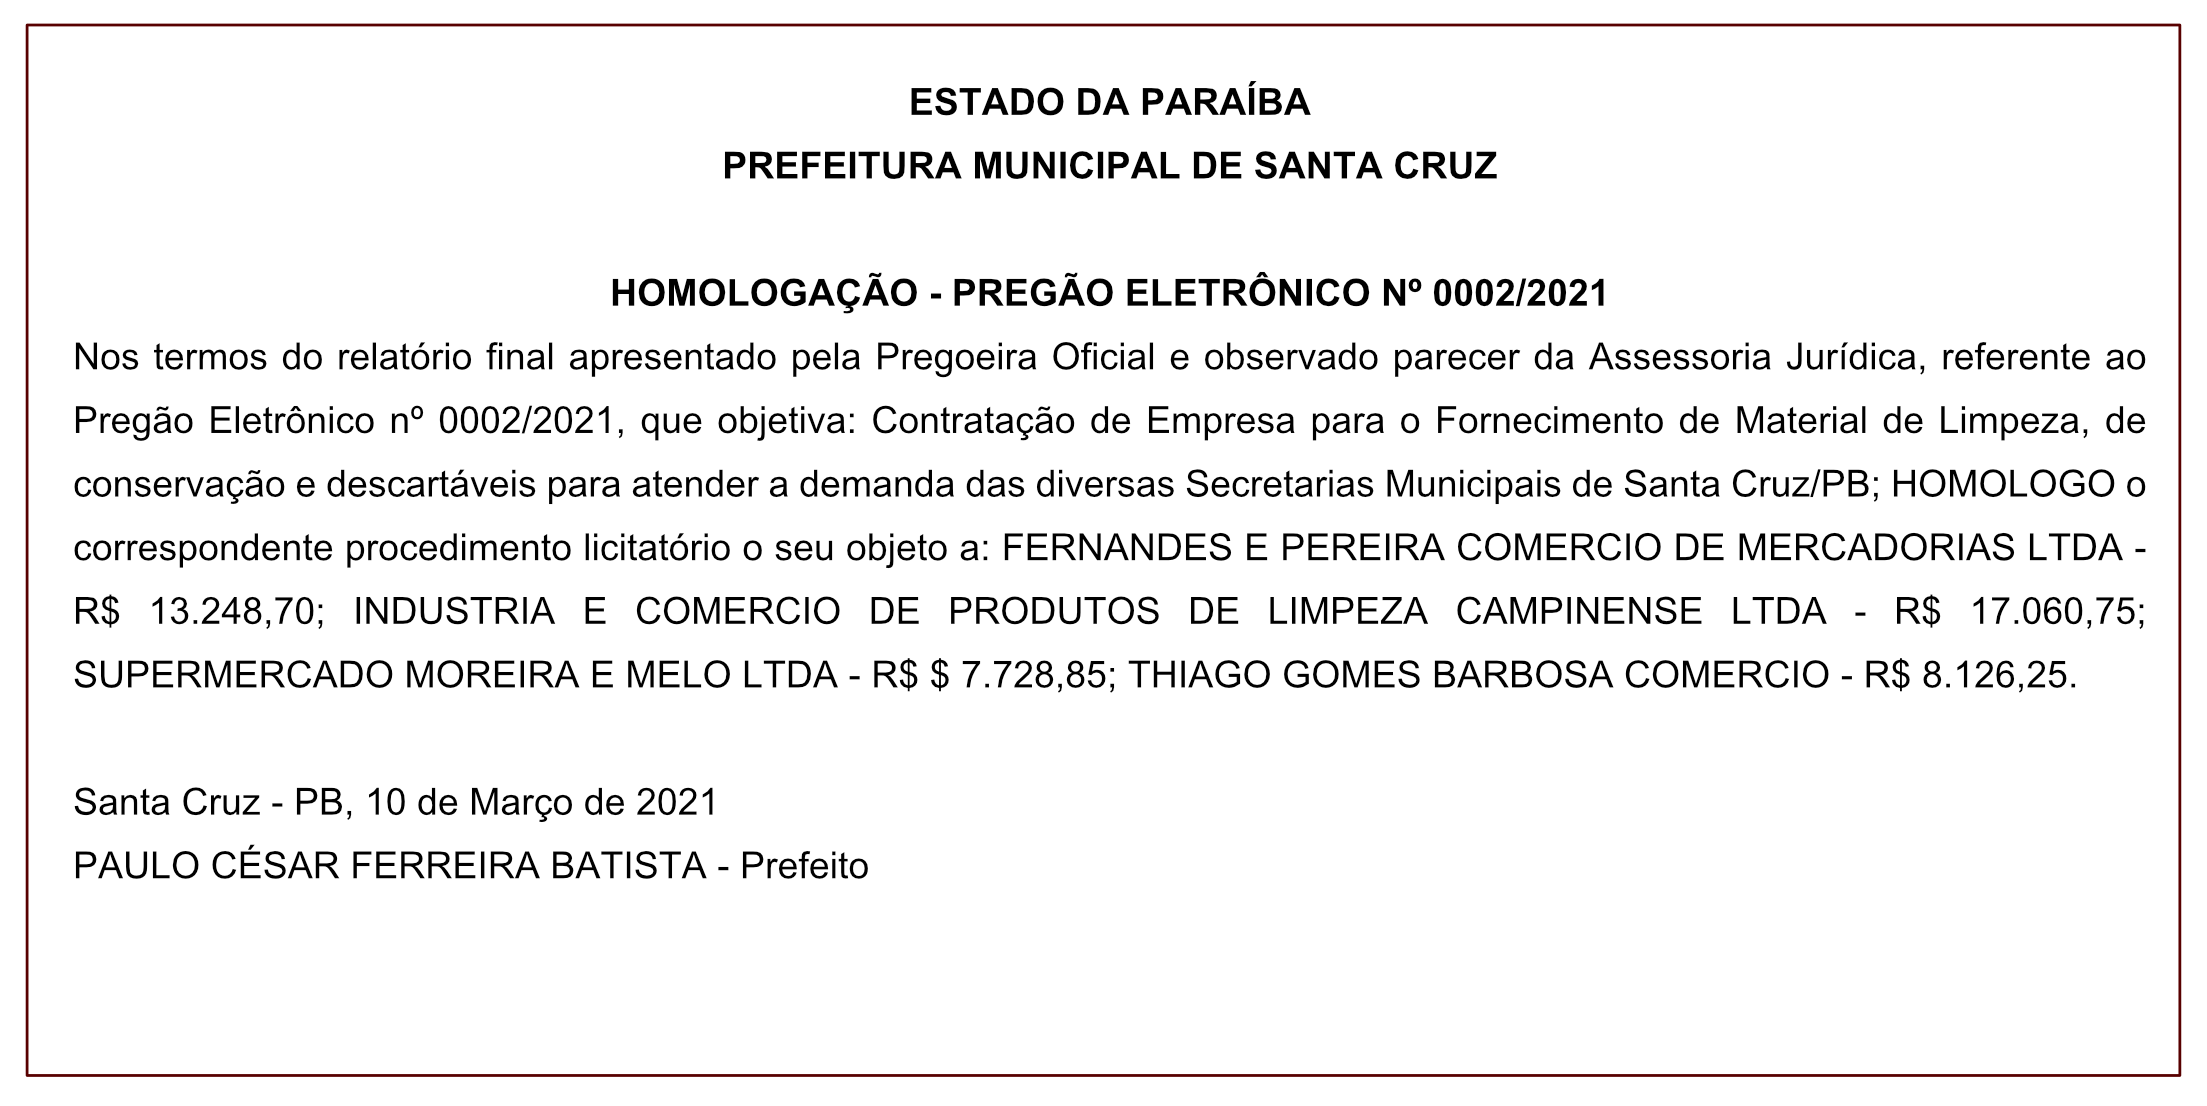 PREFEITURA MUNICIPAL DE SANTA CRUZ – HOMOLOGAÇÃO – PREGÃO ELETRÔNICO Nº 0002/2021